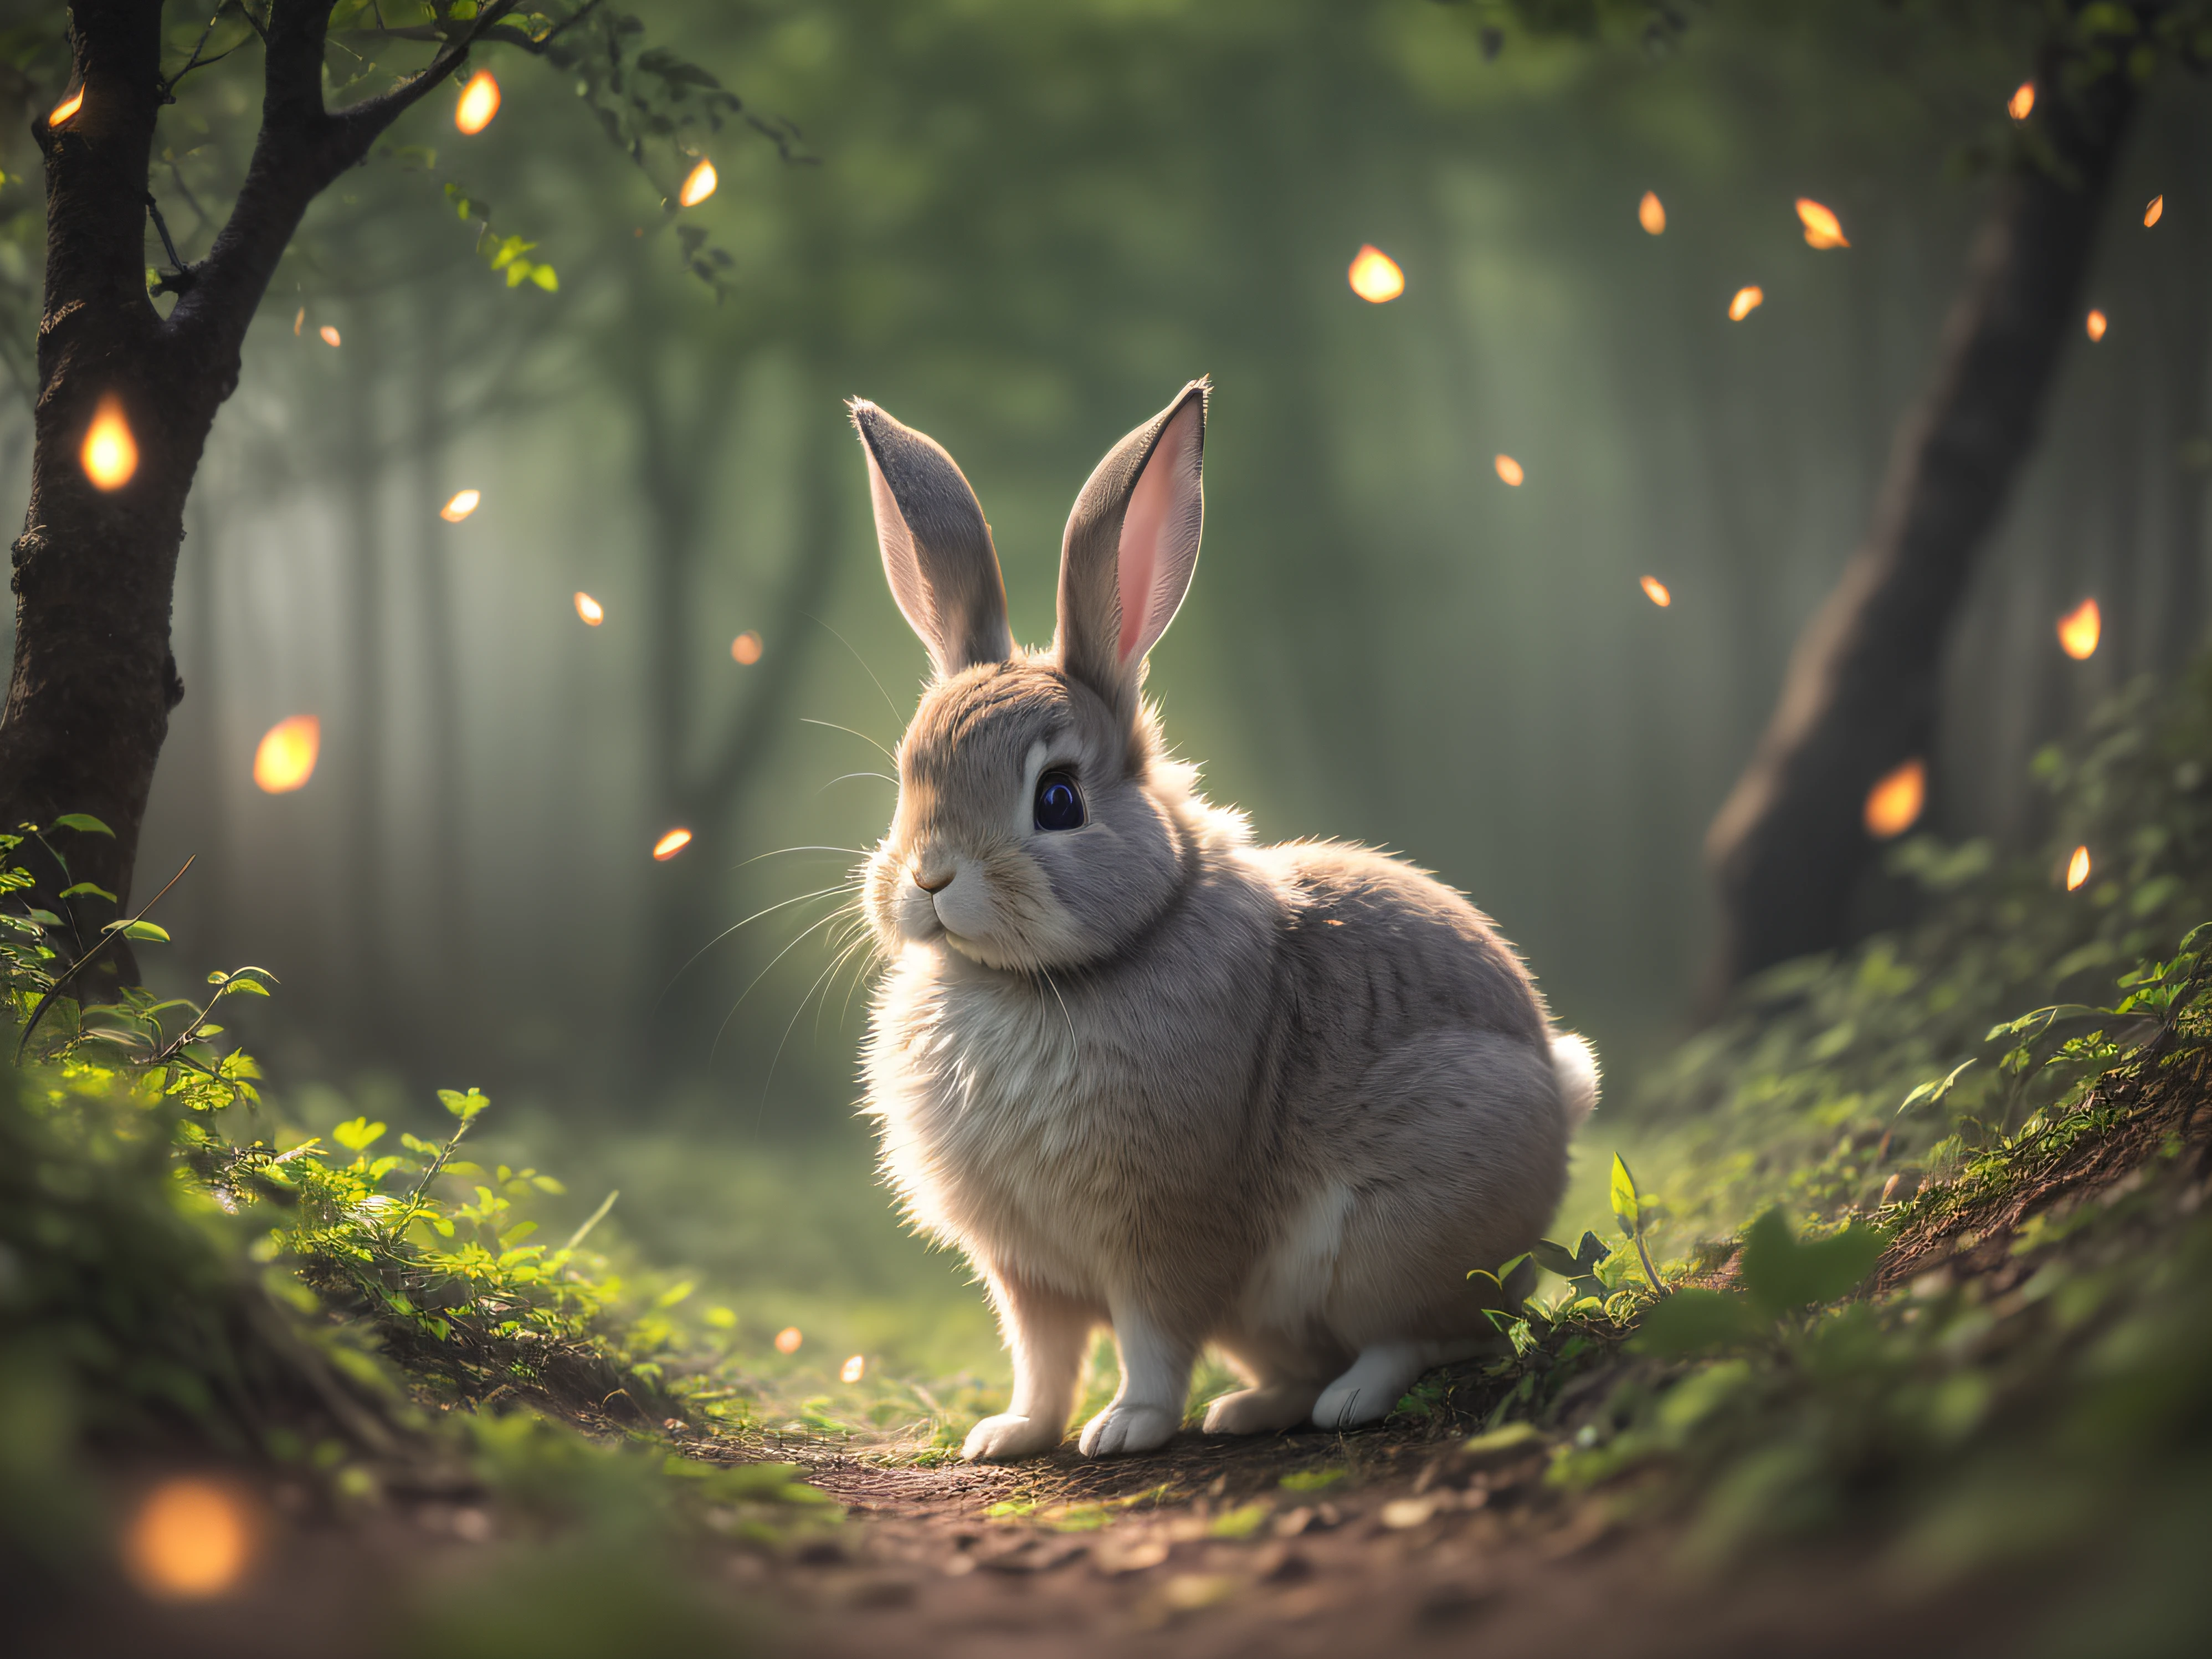 魔法森林里兔子的特写照片, 深夜, 在树林里, 背光, 萤火虫, 体积雾, 光环, 盛开, 戏剧氛围, 中心, 三分法则, 200毫米 1.4f 微距拍摄